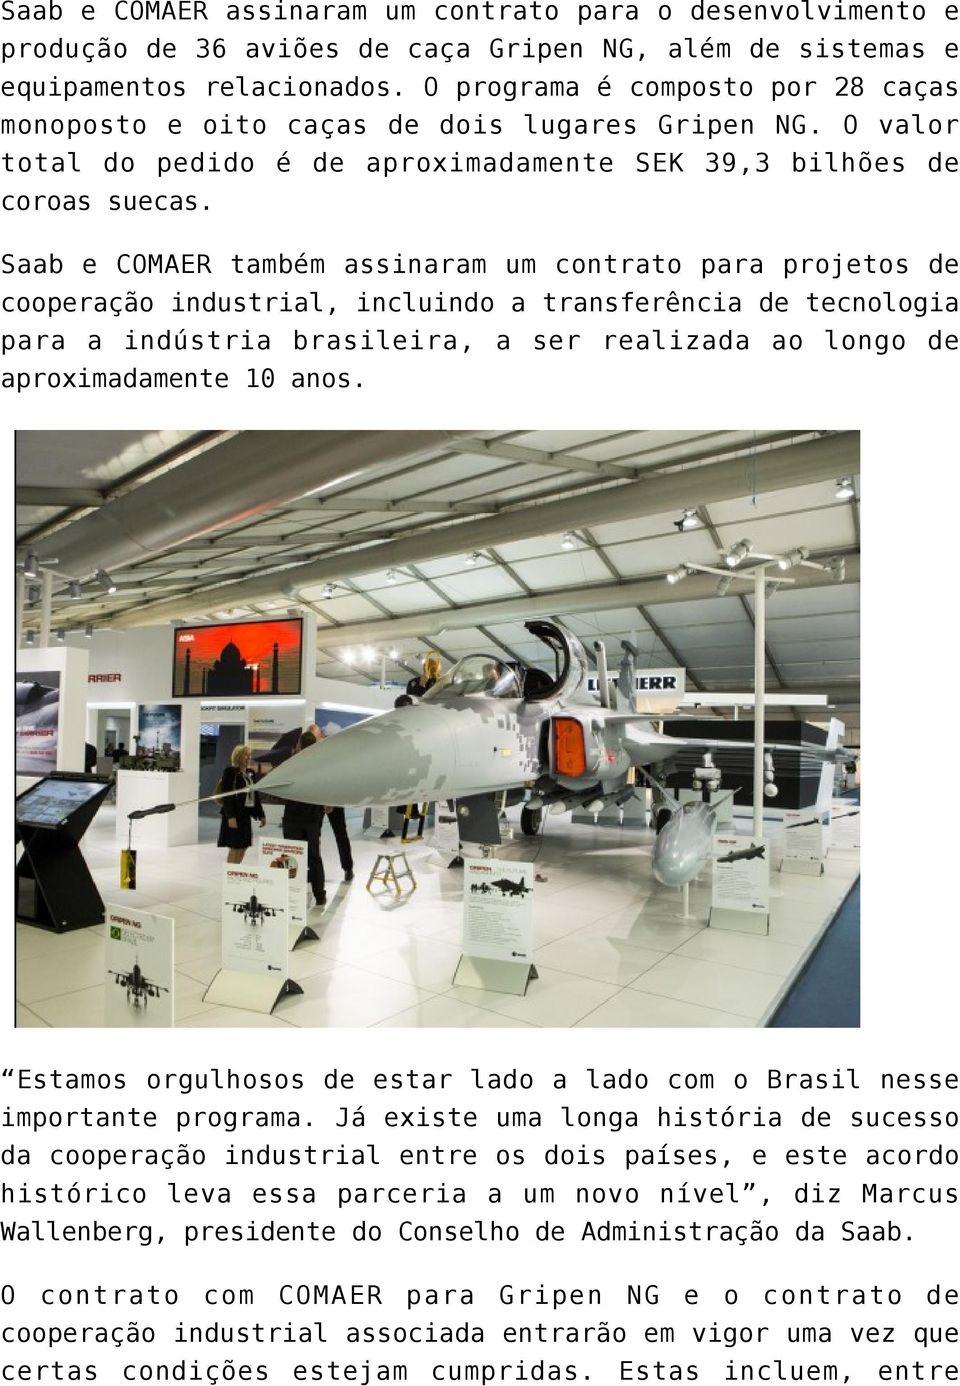 Saab e COMAER também assinaram um contrato para projetos de cooperação industrial, incluindo a transferência de tecnologia para a indústria brasileira, a ser realizada ao longo de aproximadamente 10